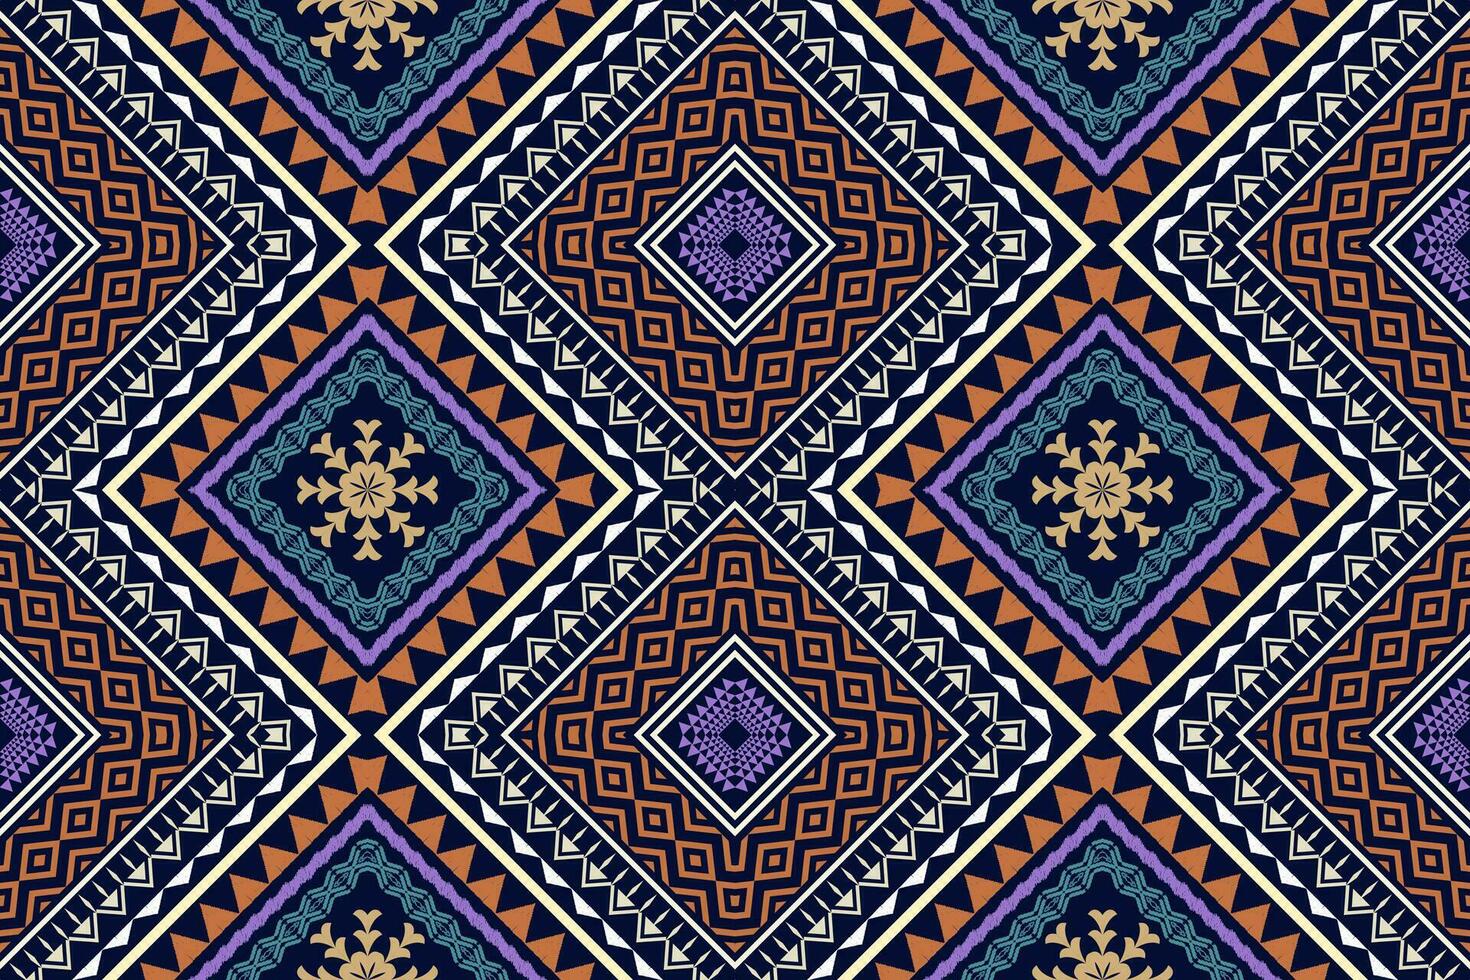 geometrische etnische oosterse traditionele kunst patroon.figuur tribal borduurwerk style.design voor achtergrond,wallpaper,kleding,inwikkeling,stof,element,,vector illustratie. vector